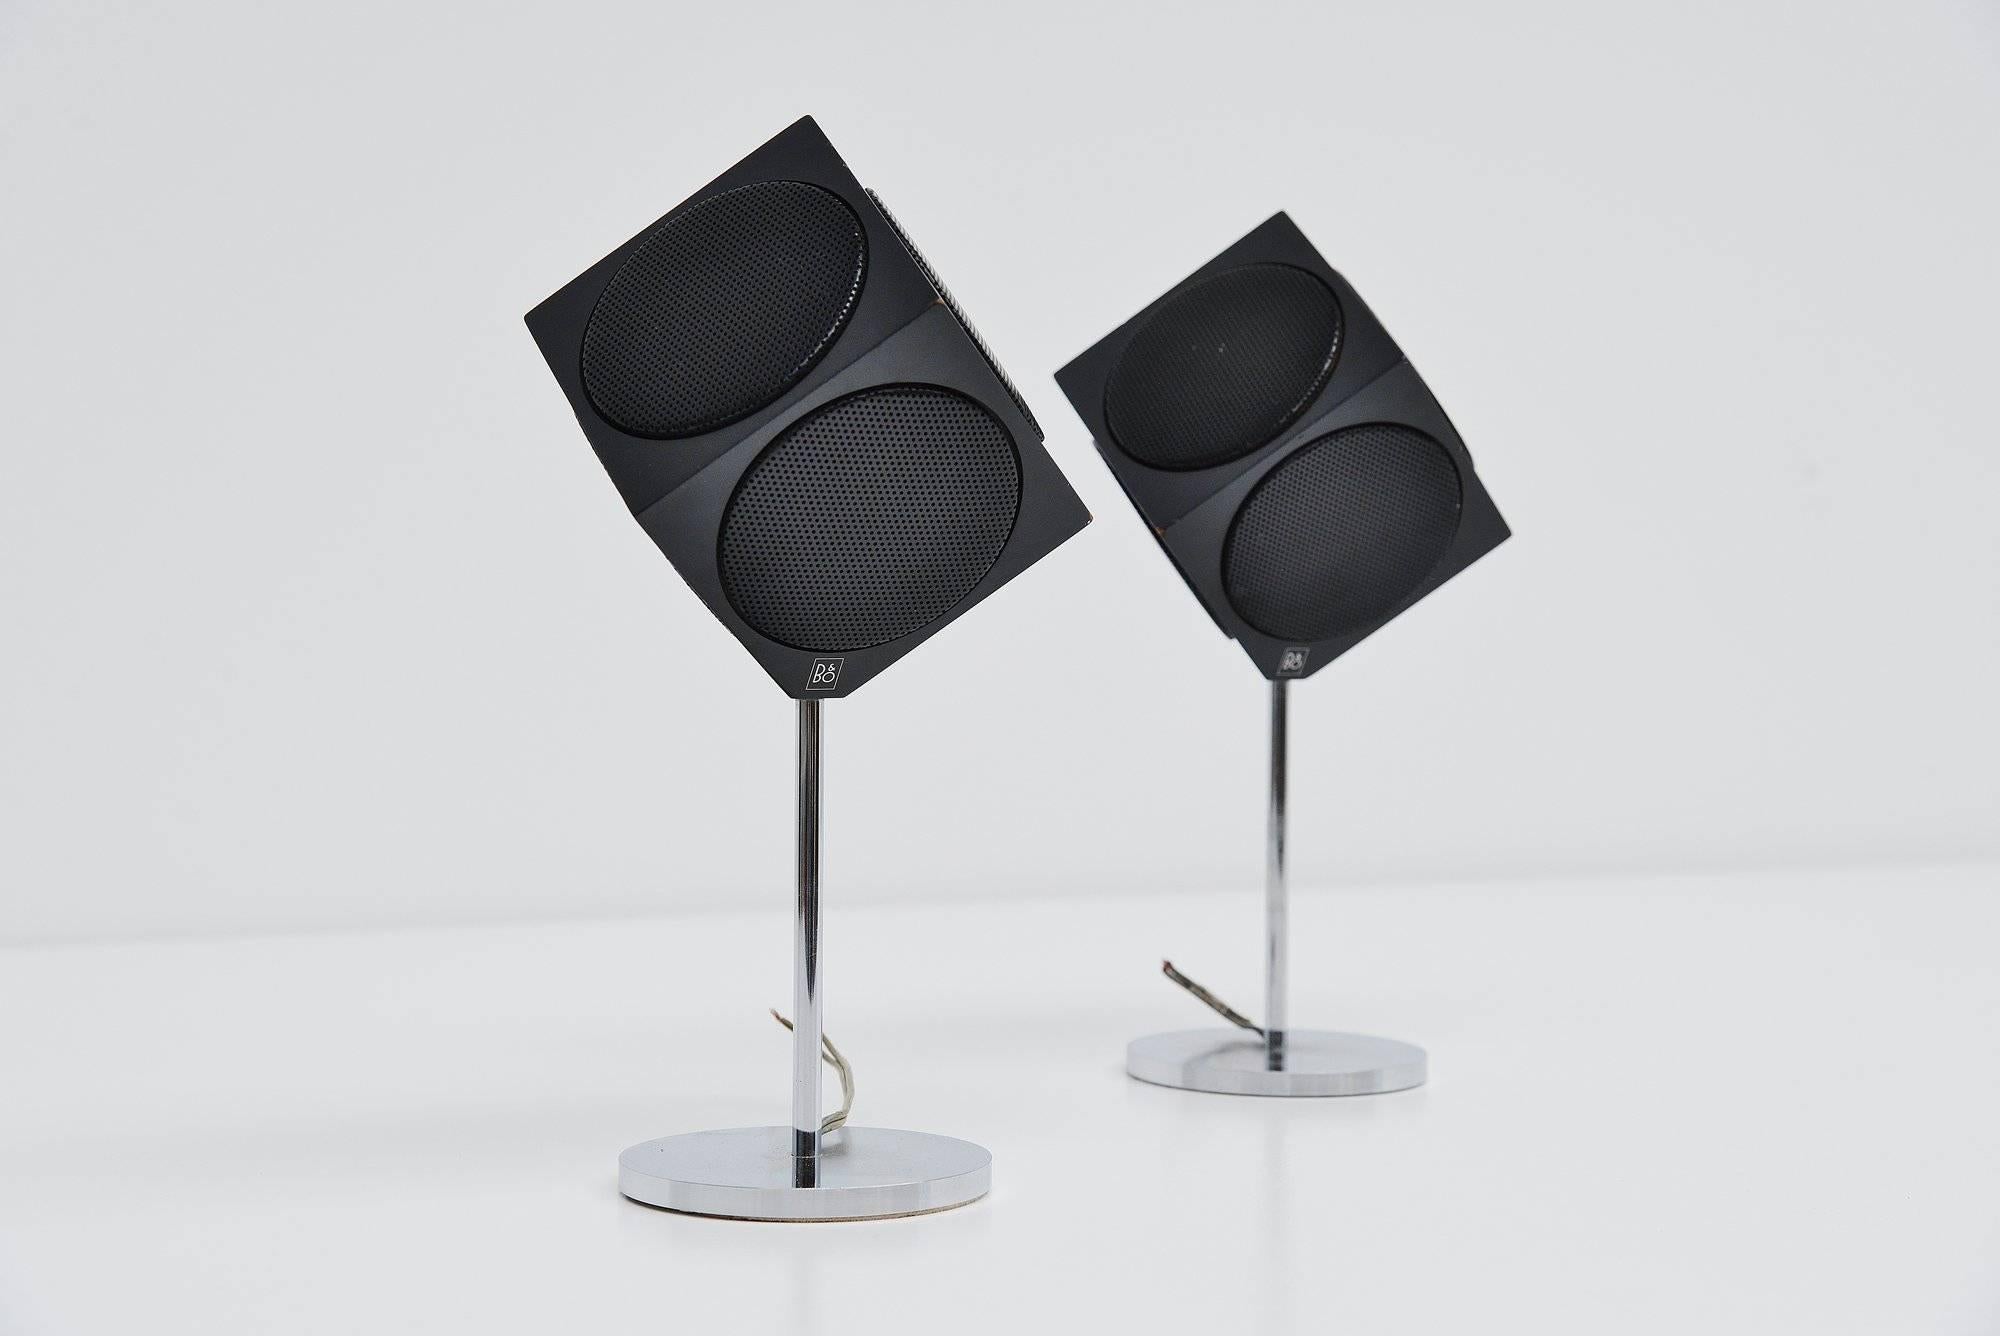 b&o cube speakers